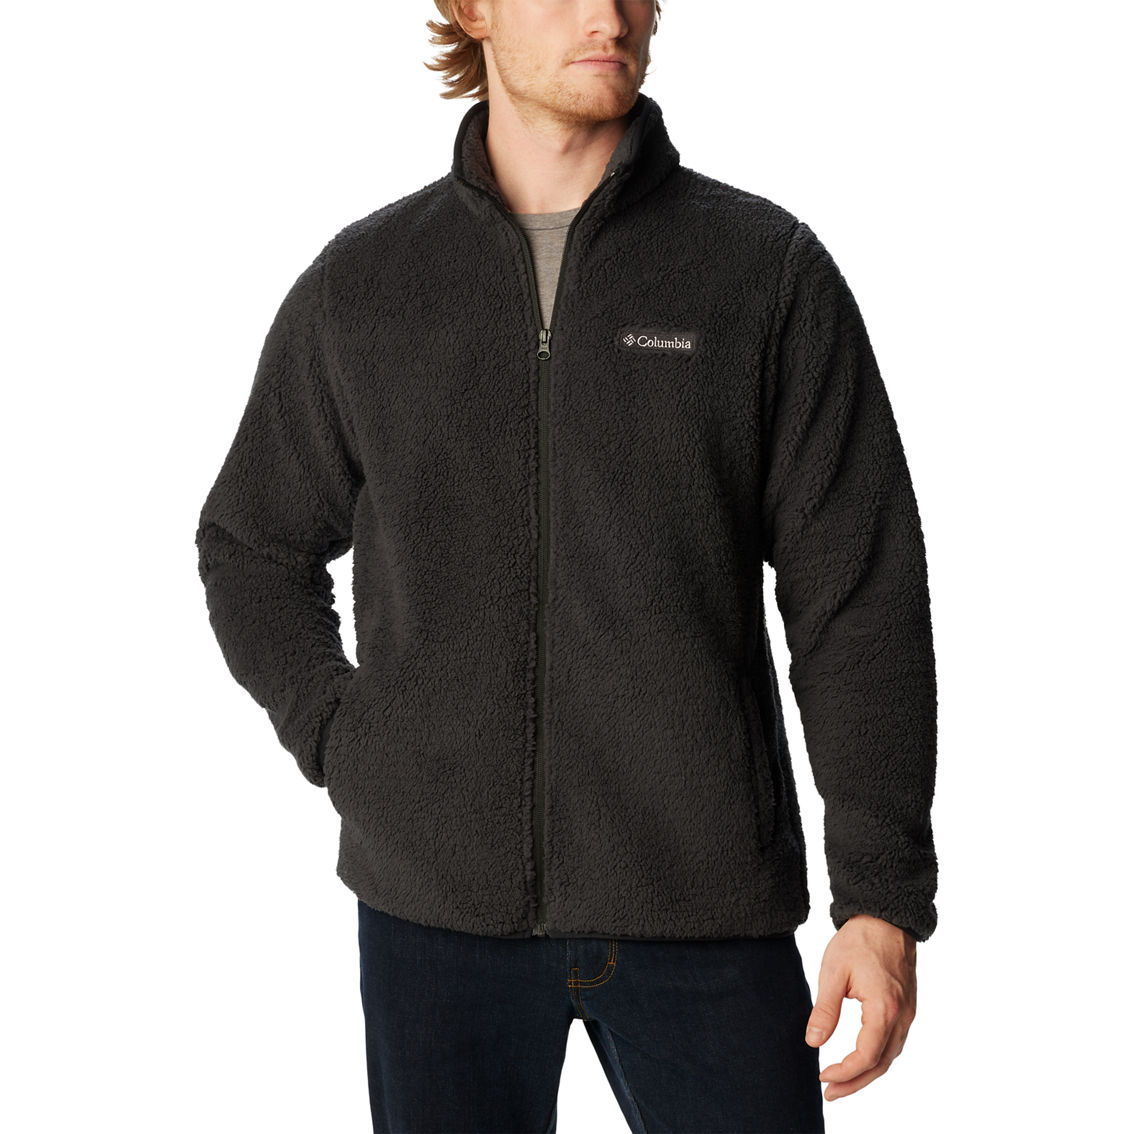 Columbia Rugged Ridge Iii Sherpa Full Zip Jacket | Jackets | Clothing ...